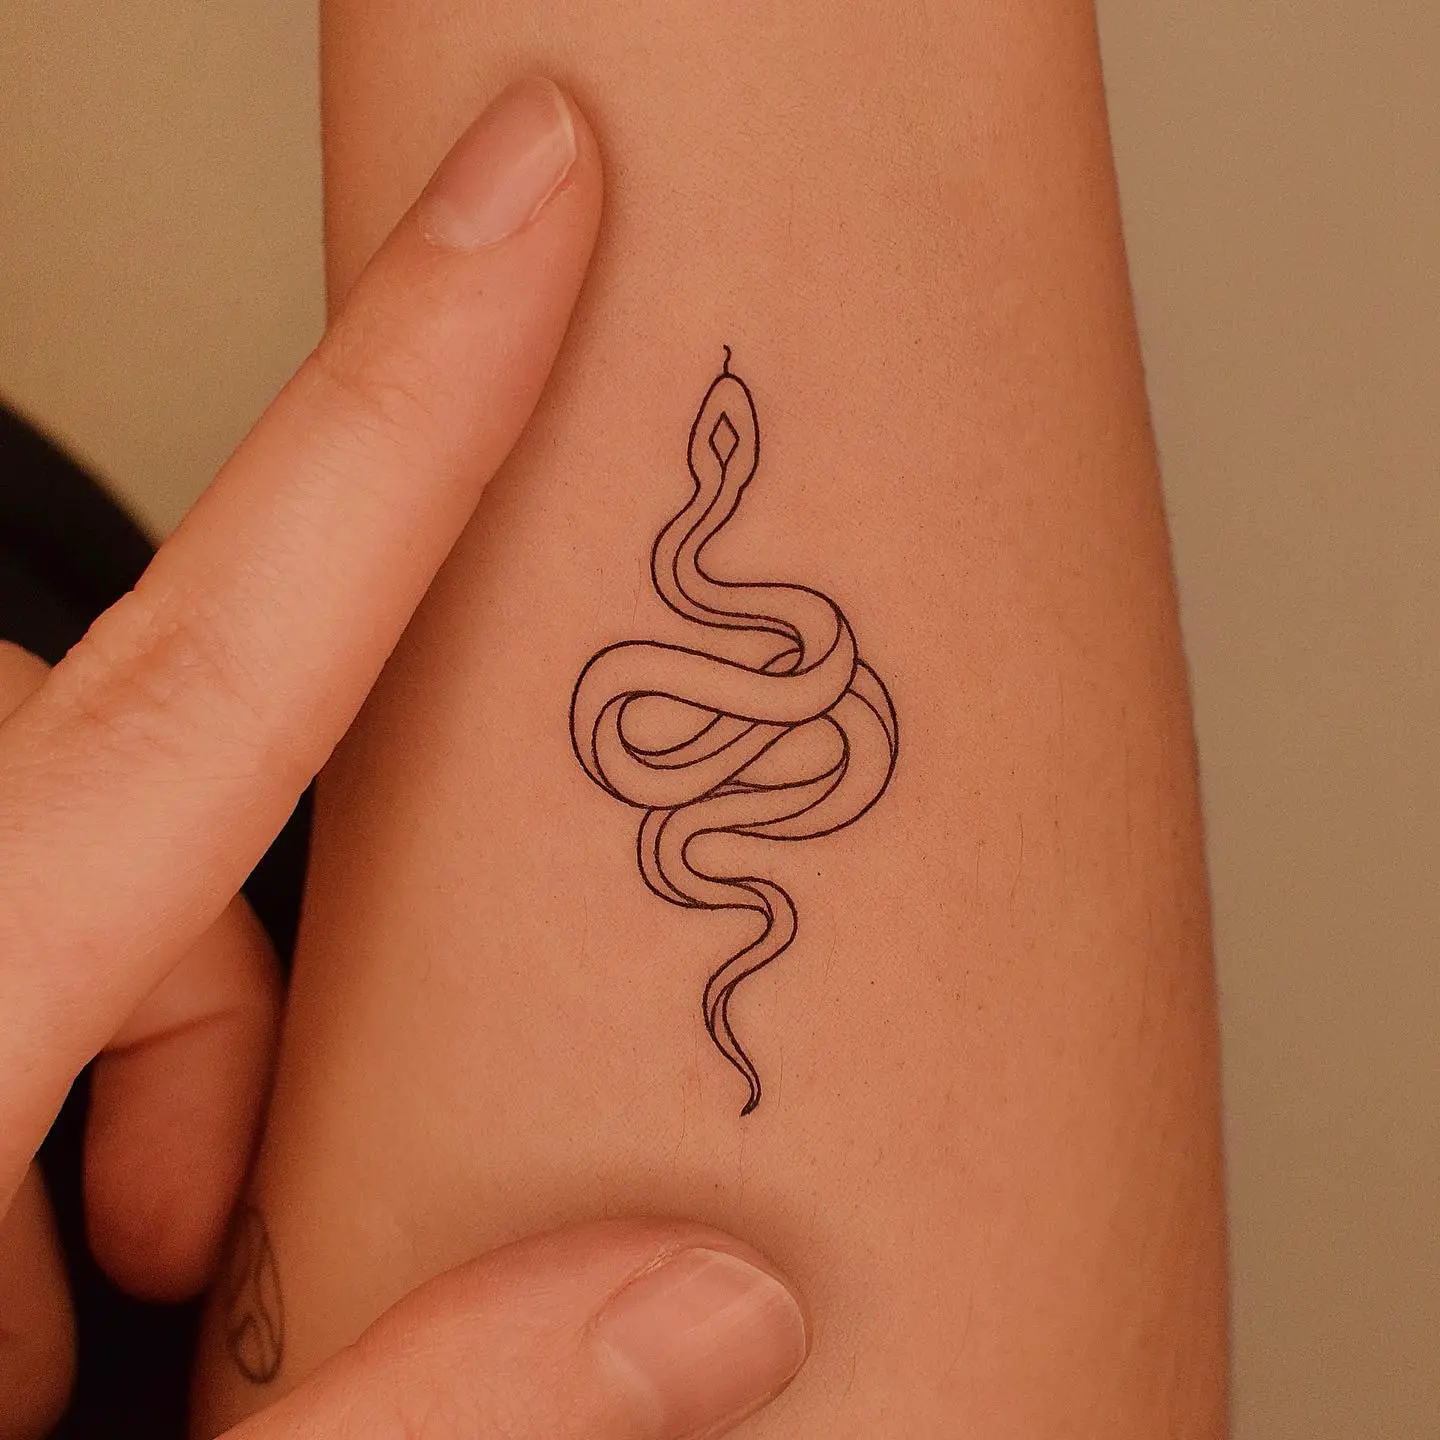 Small snake tattoo by tattooer jina